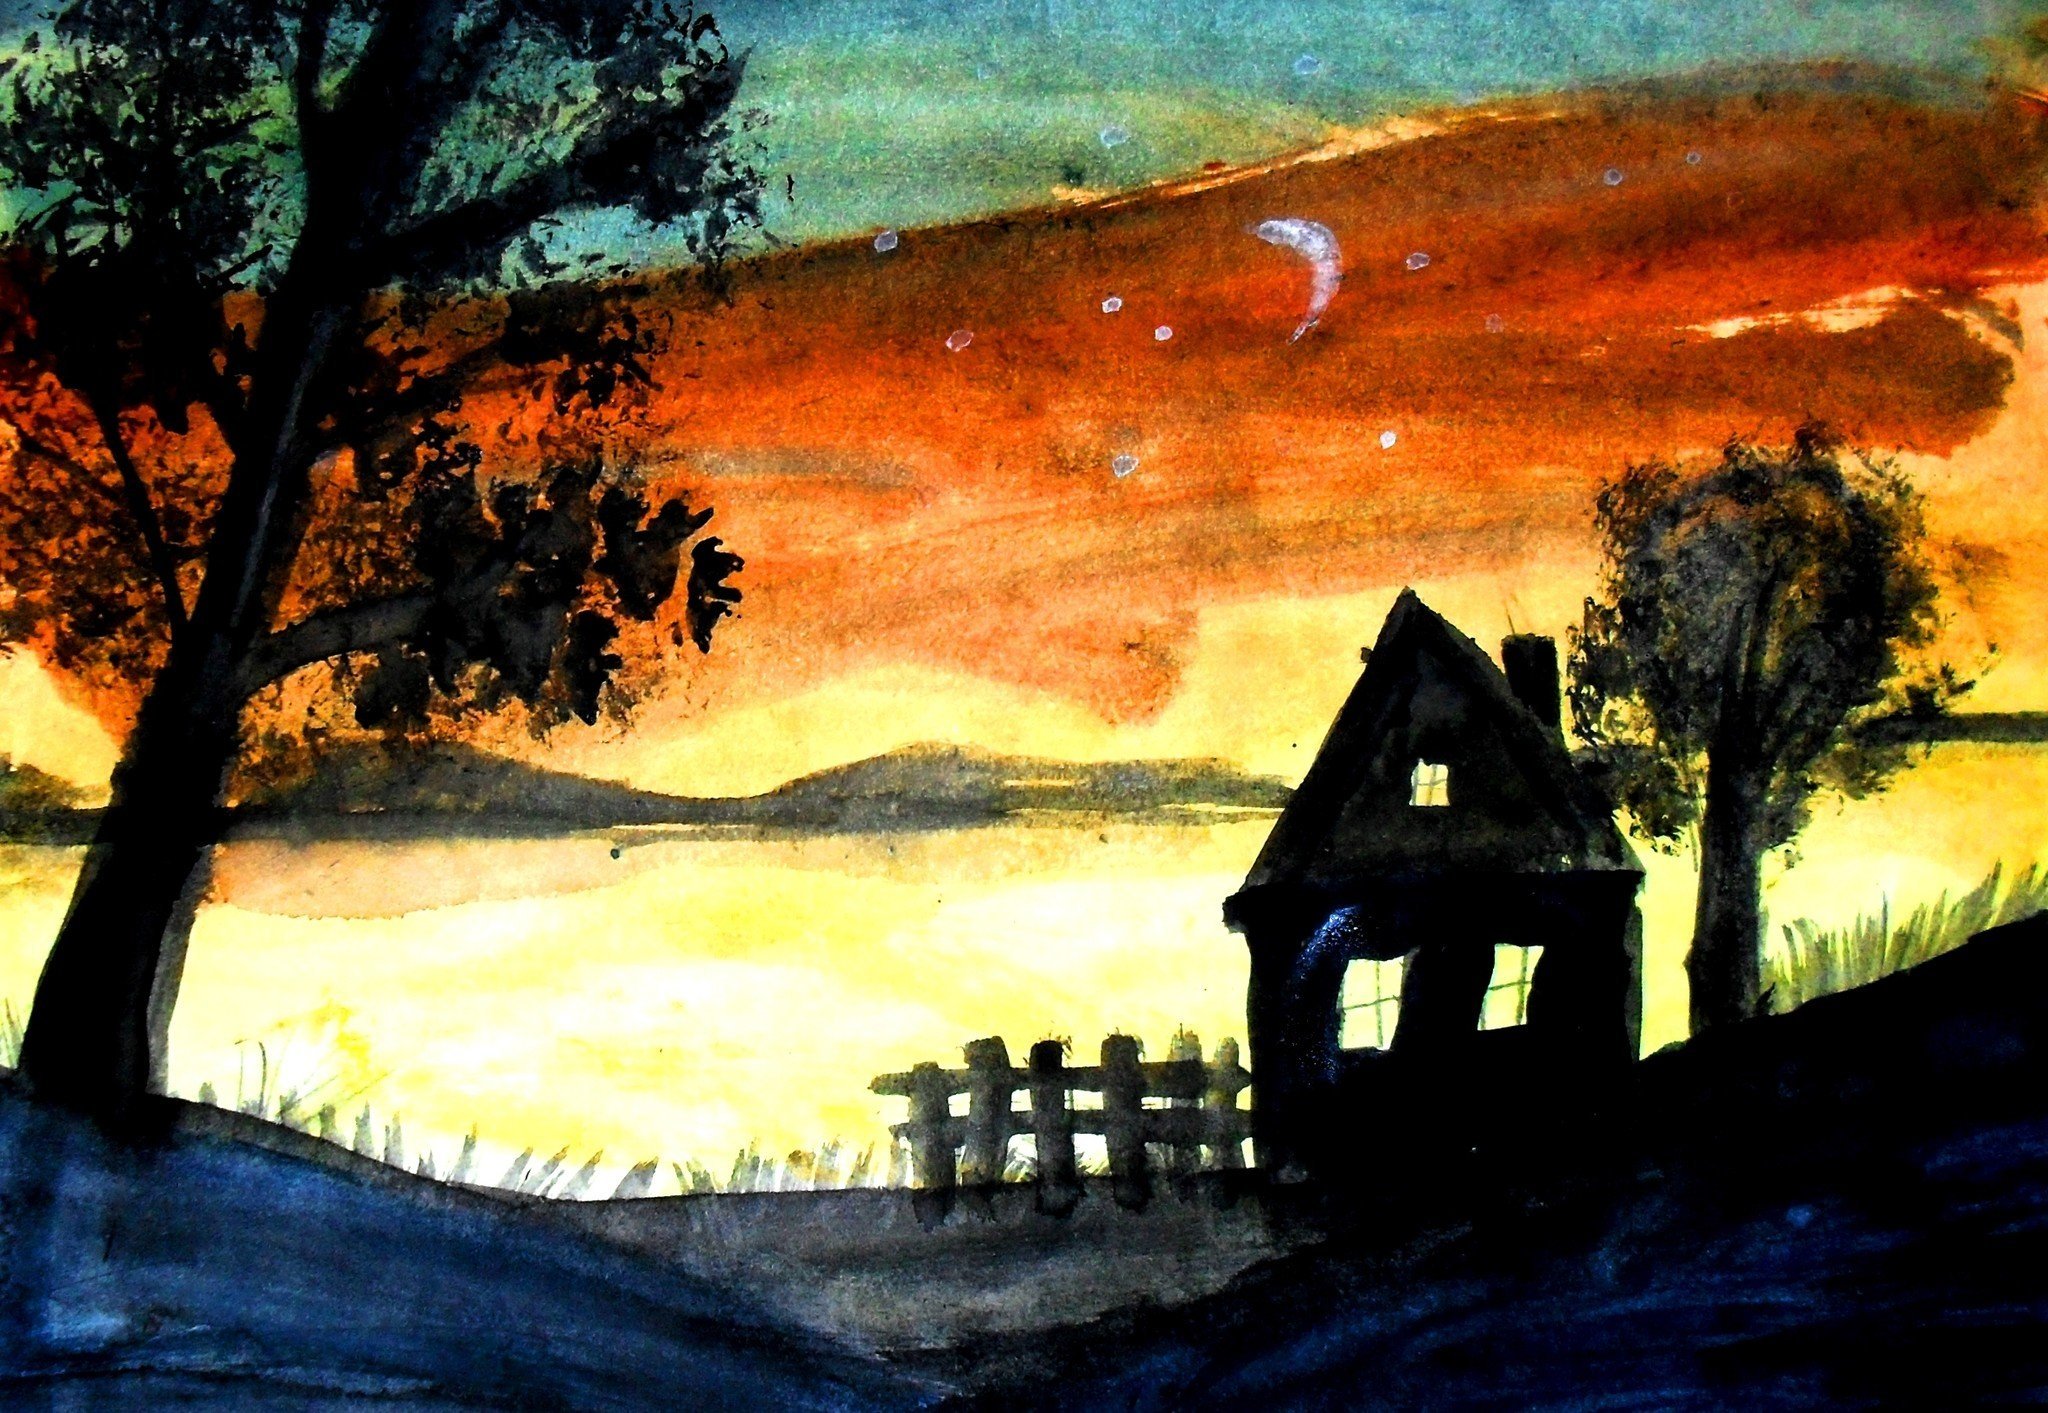 Пейзаж с передачей утреннего или вечернего настроения. Вечер рисунок. Иллюстрация ночного пейзажа. Изо ночной пейзаж. Вечерний пейзаж рисунок.